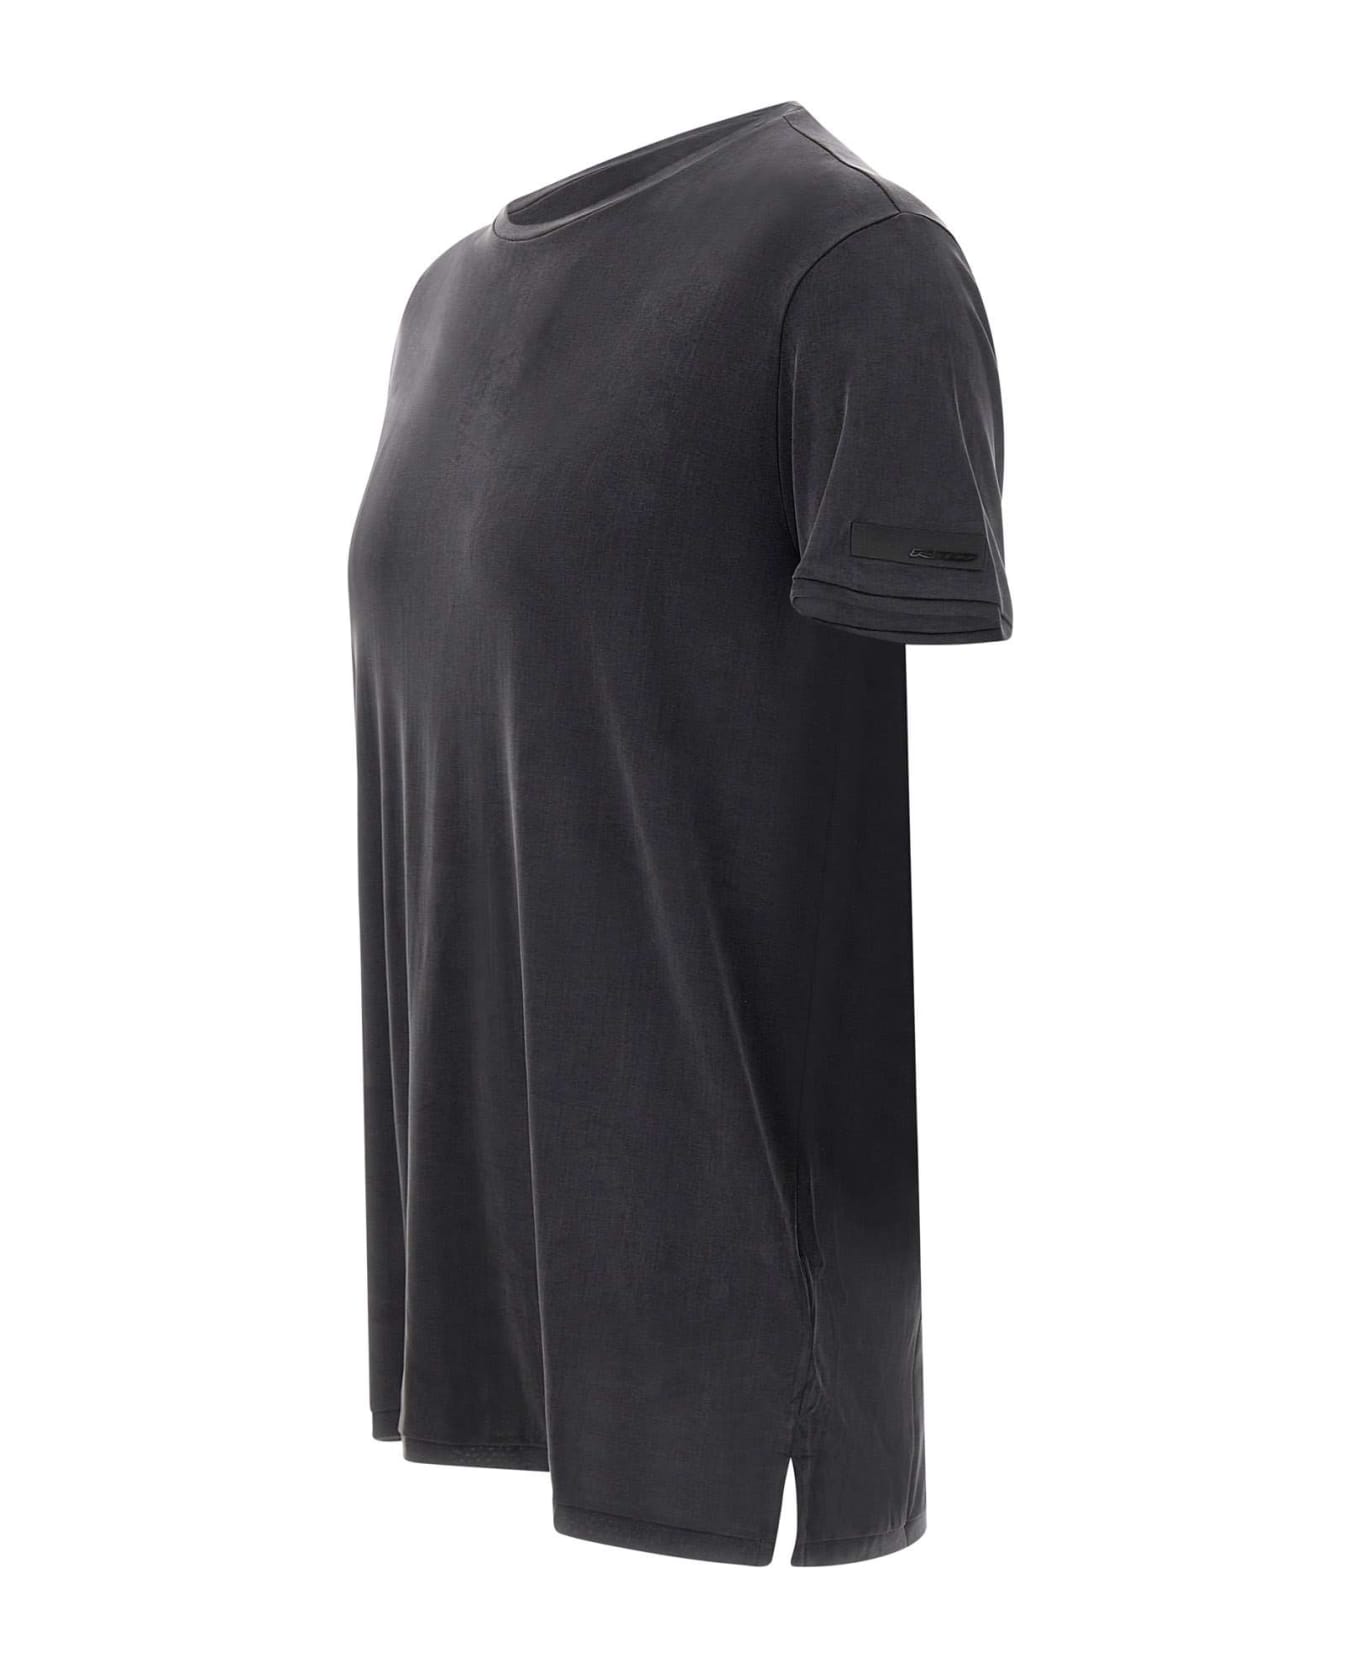 RRD - Roberto Ricci Design "cupro Shirty" T-shirt - BLACK